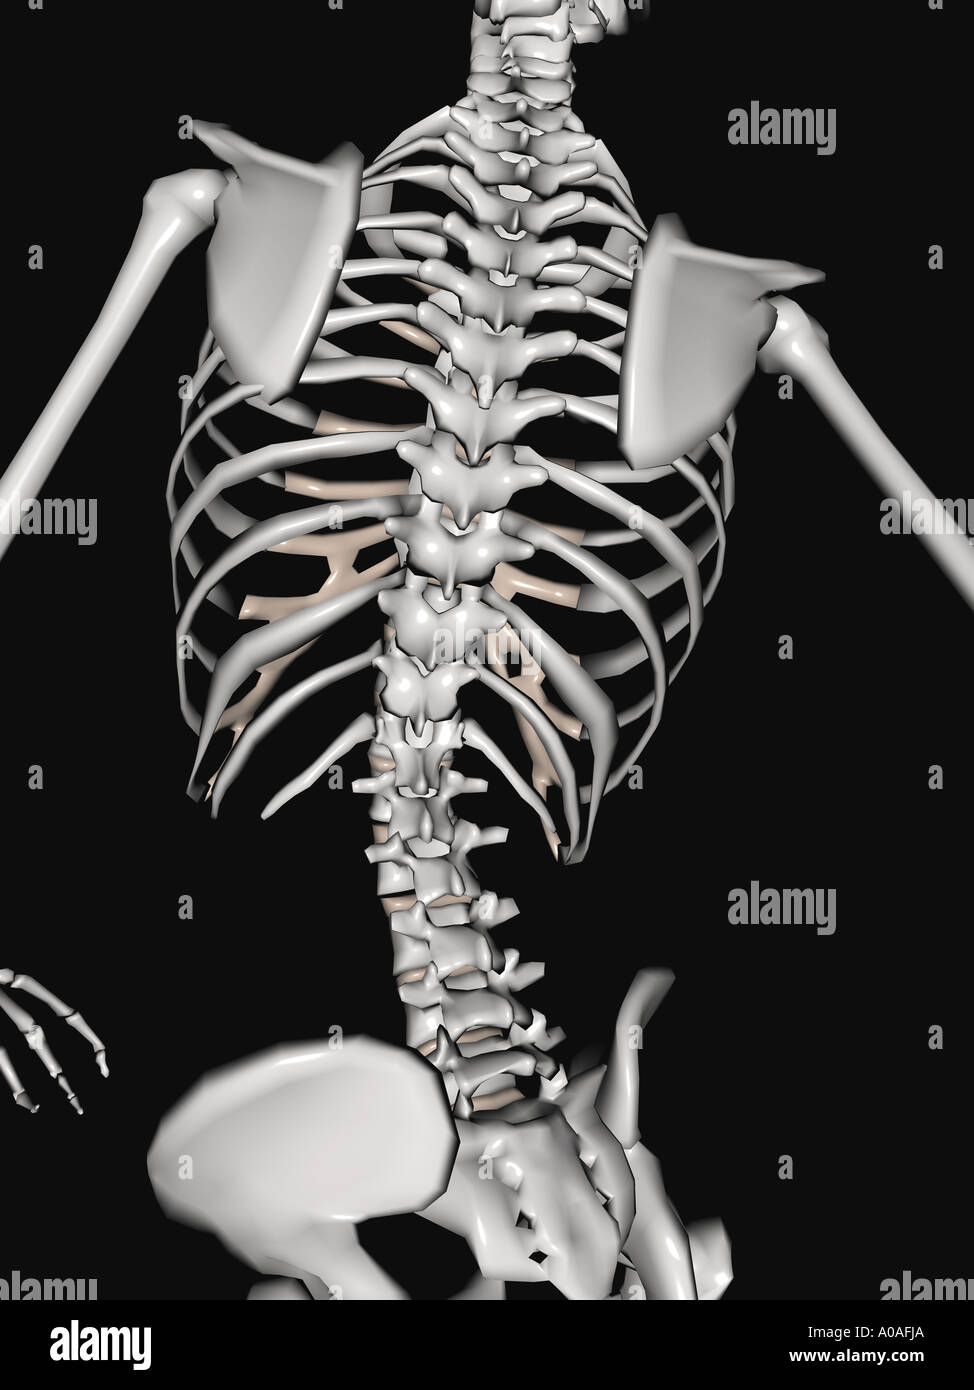 Illustrative diagram showing skeleton focus on the shoulders back ...